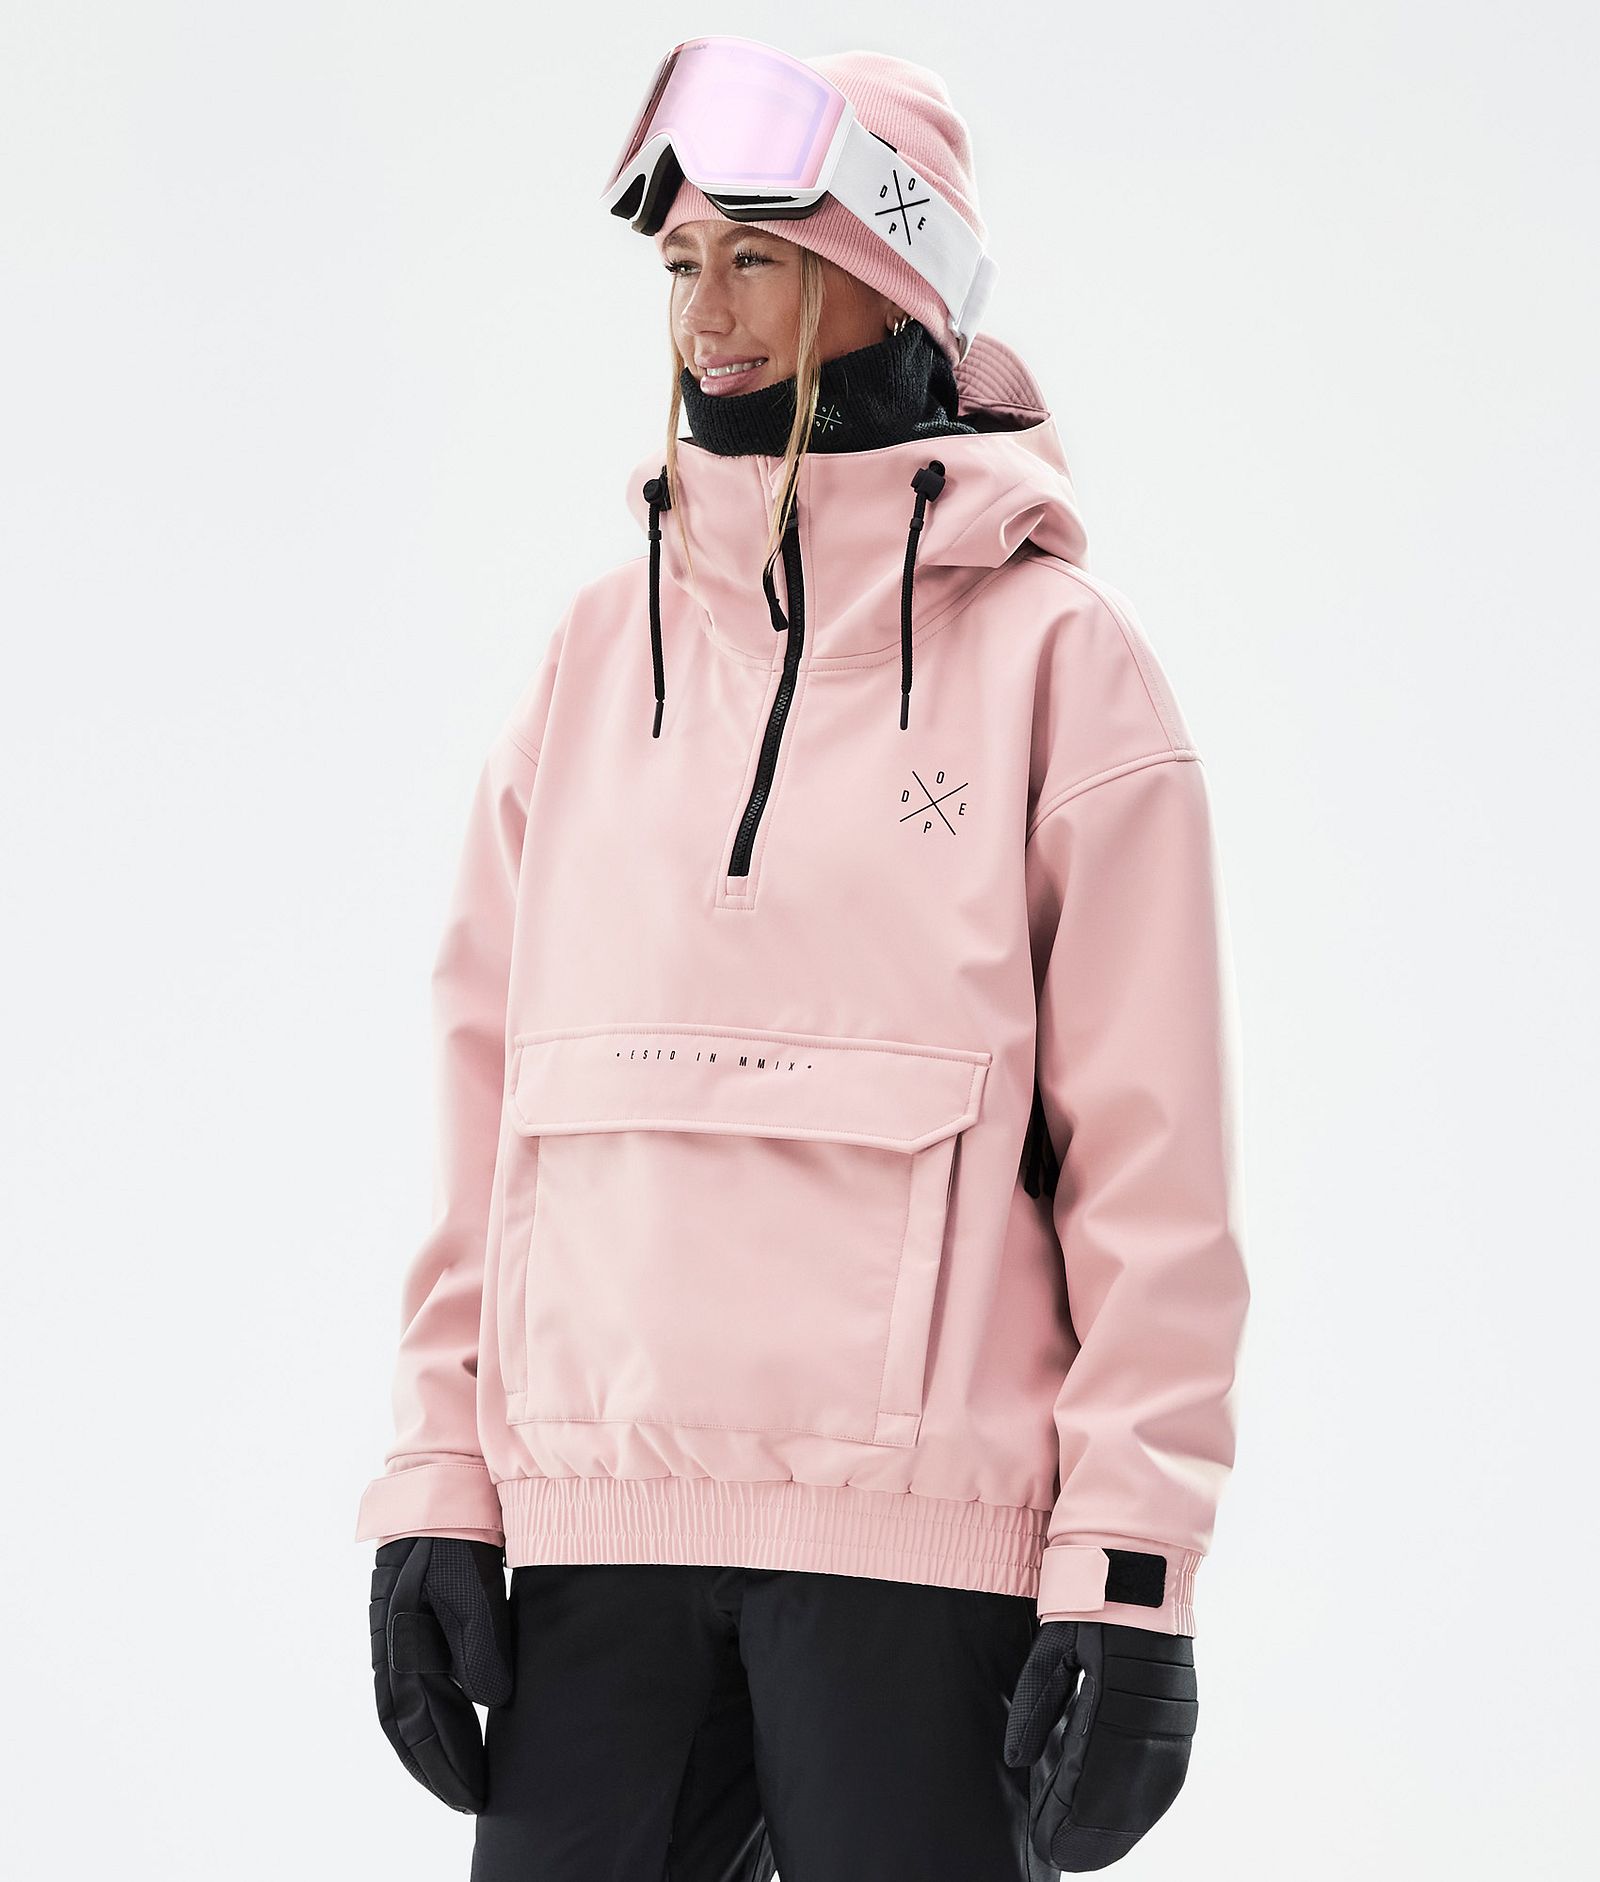 Cyclone W Veste de Ski Femme Soft Pink, Image 1 sur 8